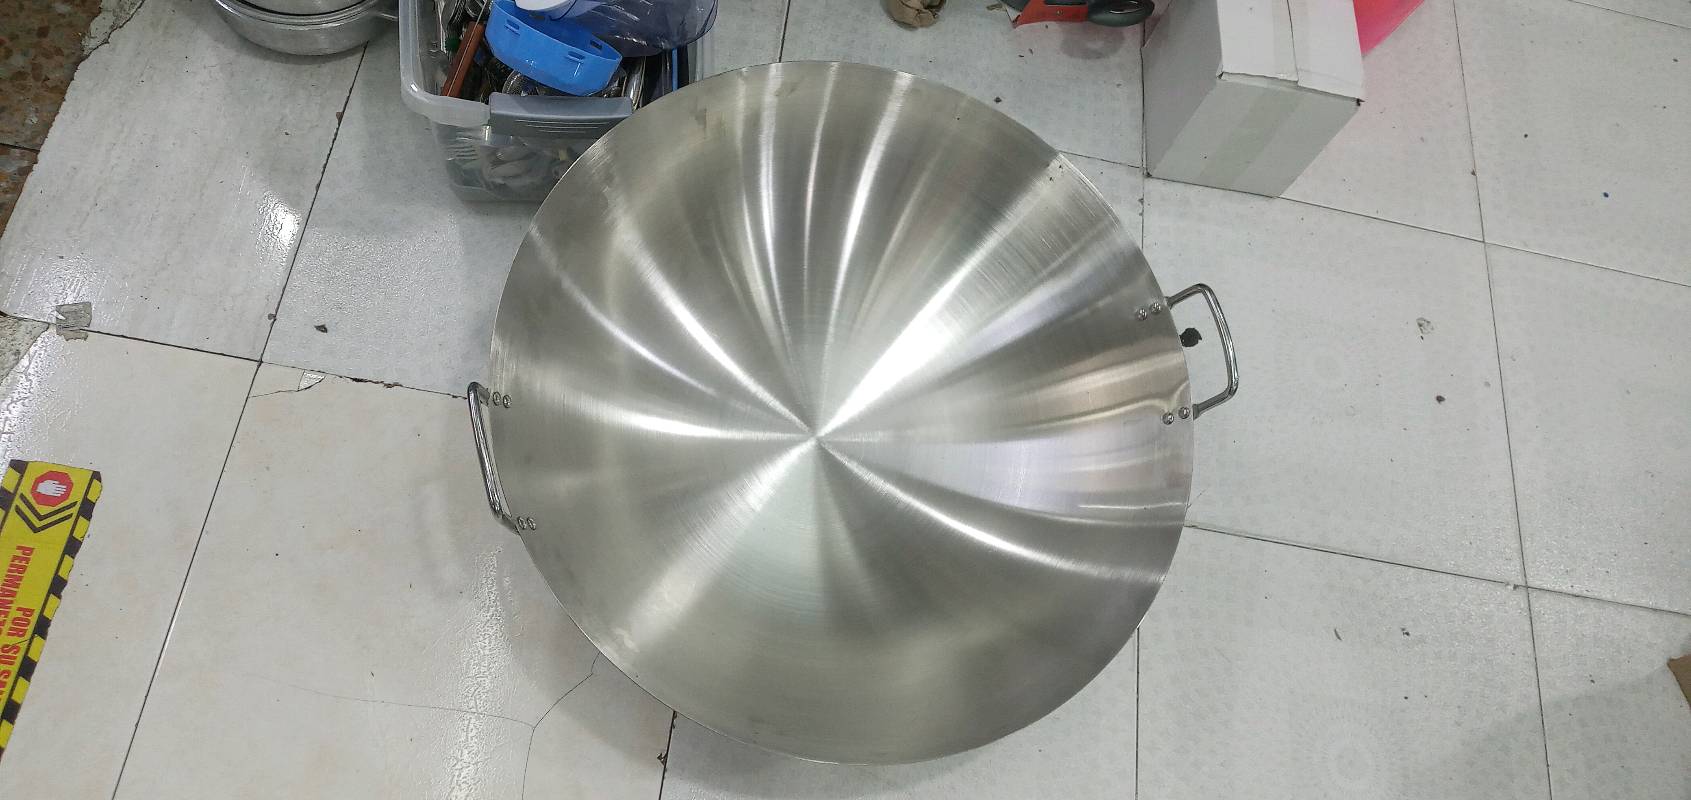 frying_pan, solar_dish, ladle